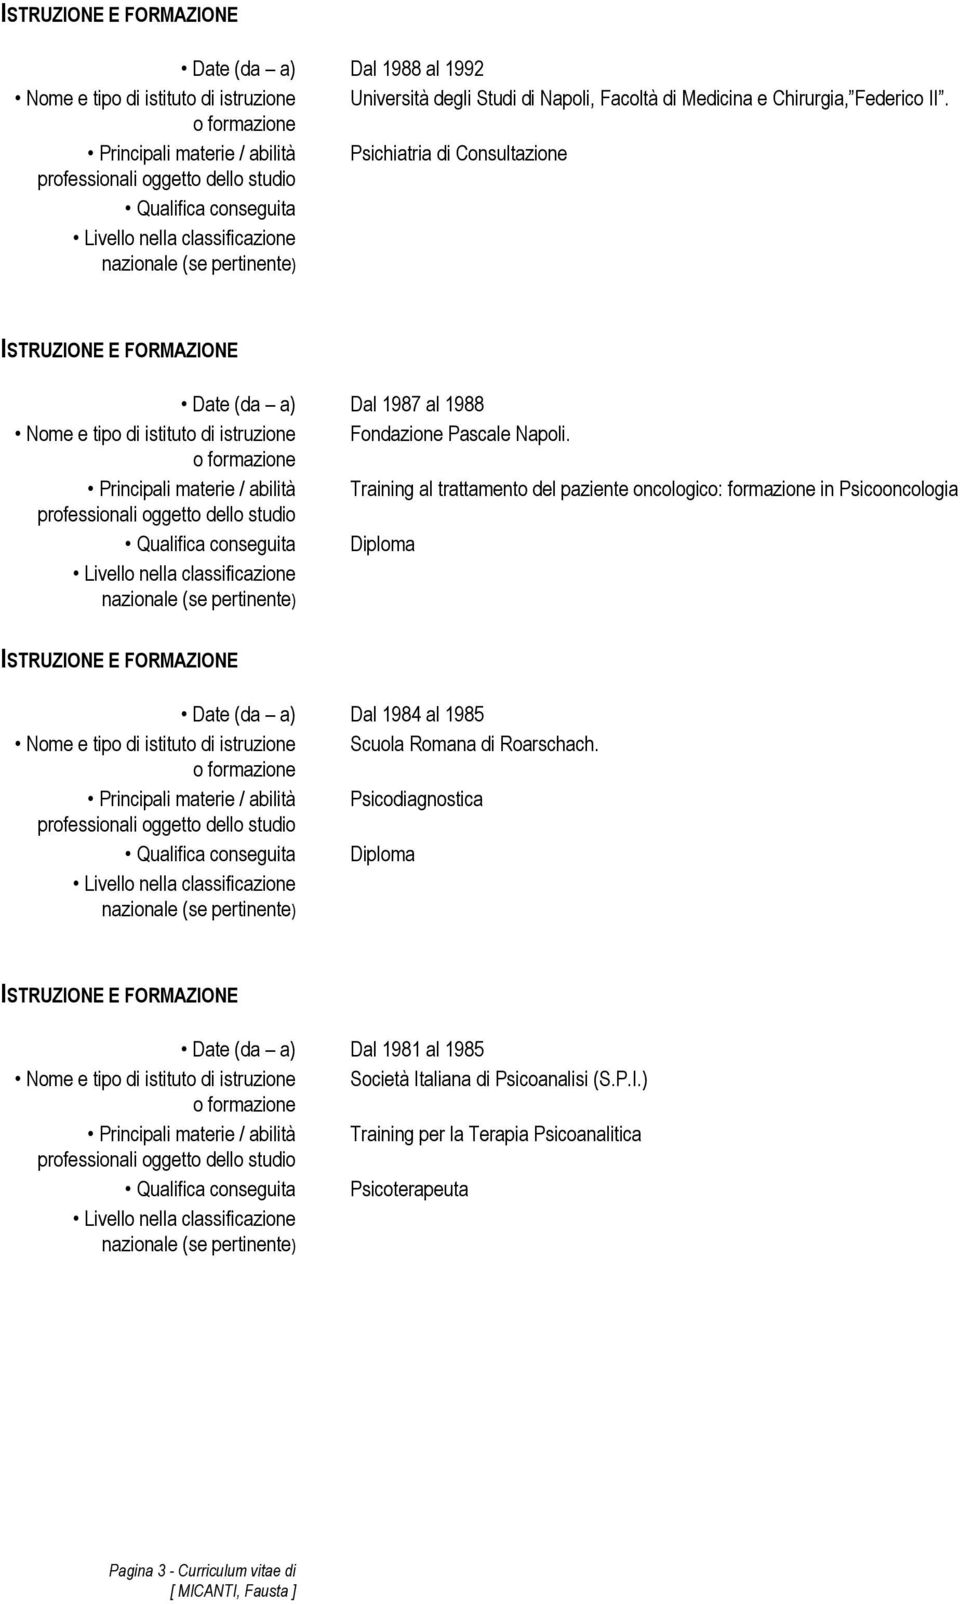 Principali materie / abilità Training al trattamento del paziente oncologico: formazione in Psicooncologia Diploma Date (da a) Dal 1984 al 1985 Nome e tipo di